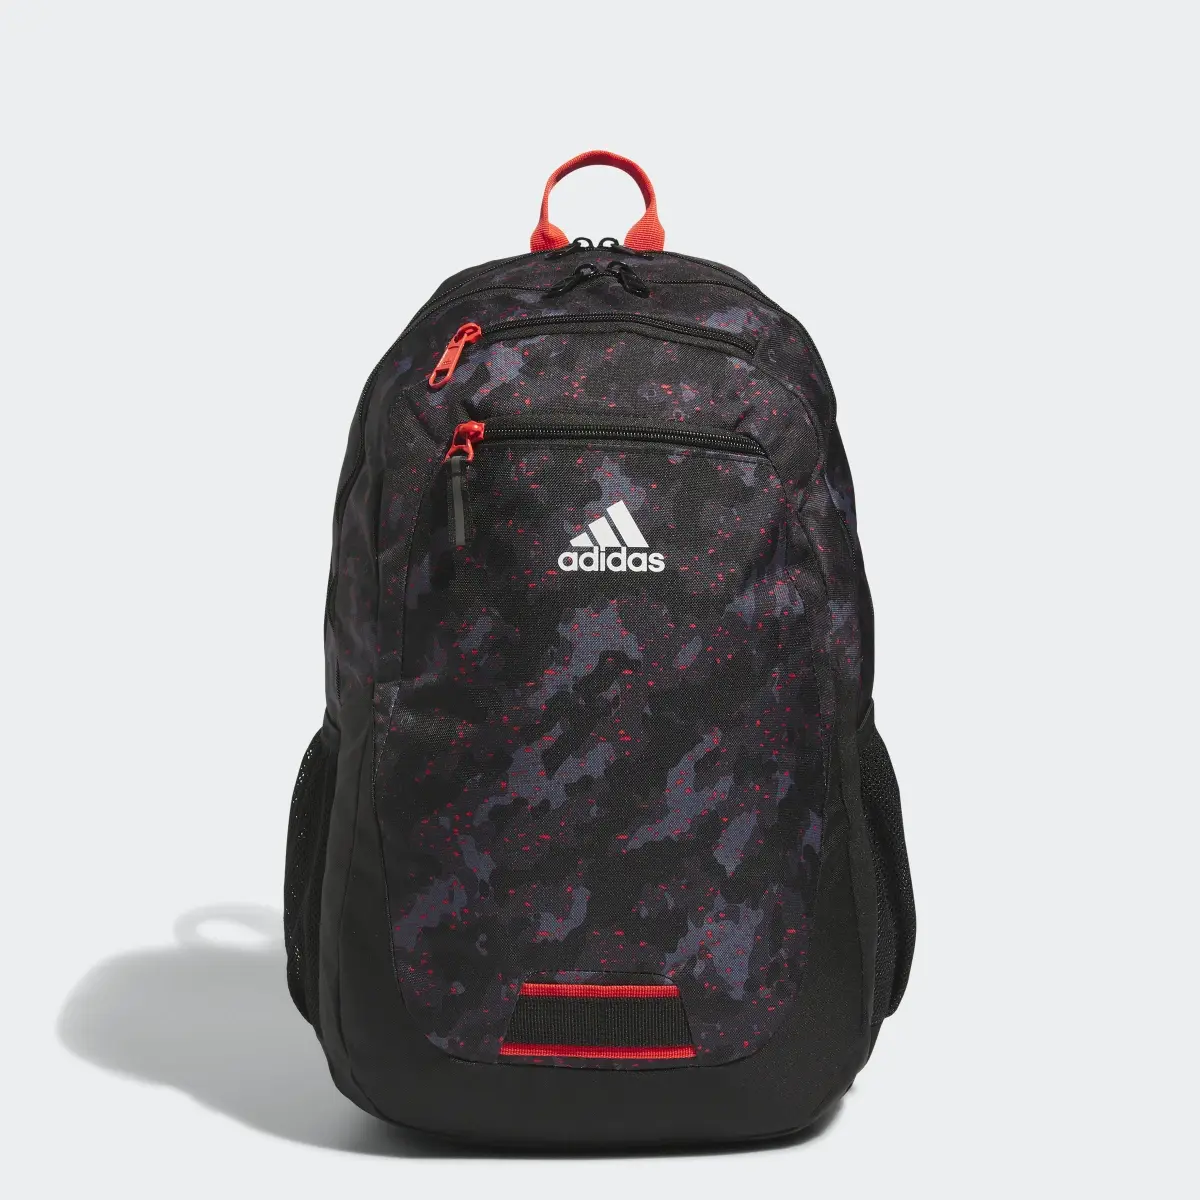 Adidas Foundation 6 Backpack. 1